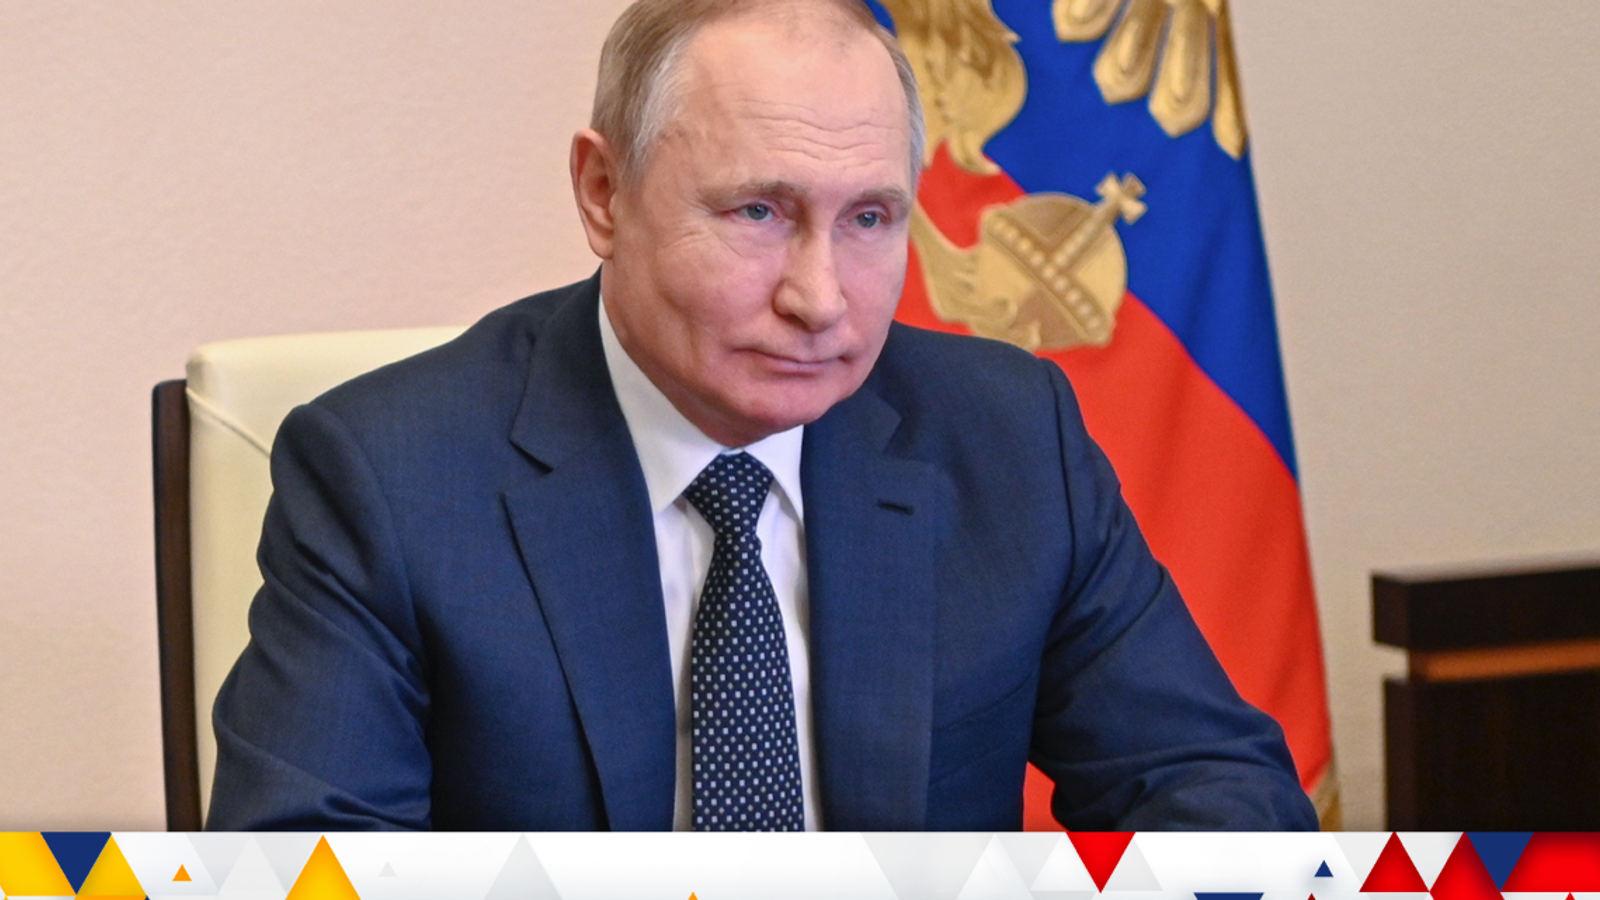 война на Украине: Россия обвиняет Запад в «отвратительных» действиях, а Путин реагирует на замечания Байдена о «военных преступлениях» |  Главные новости Новости